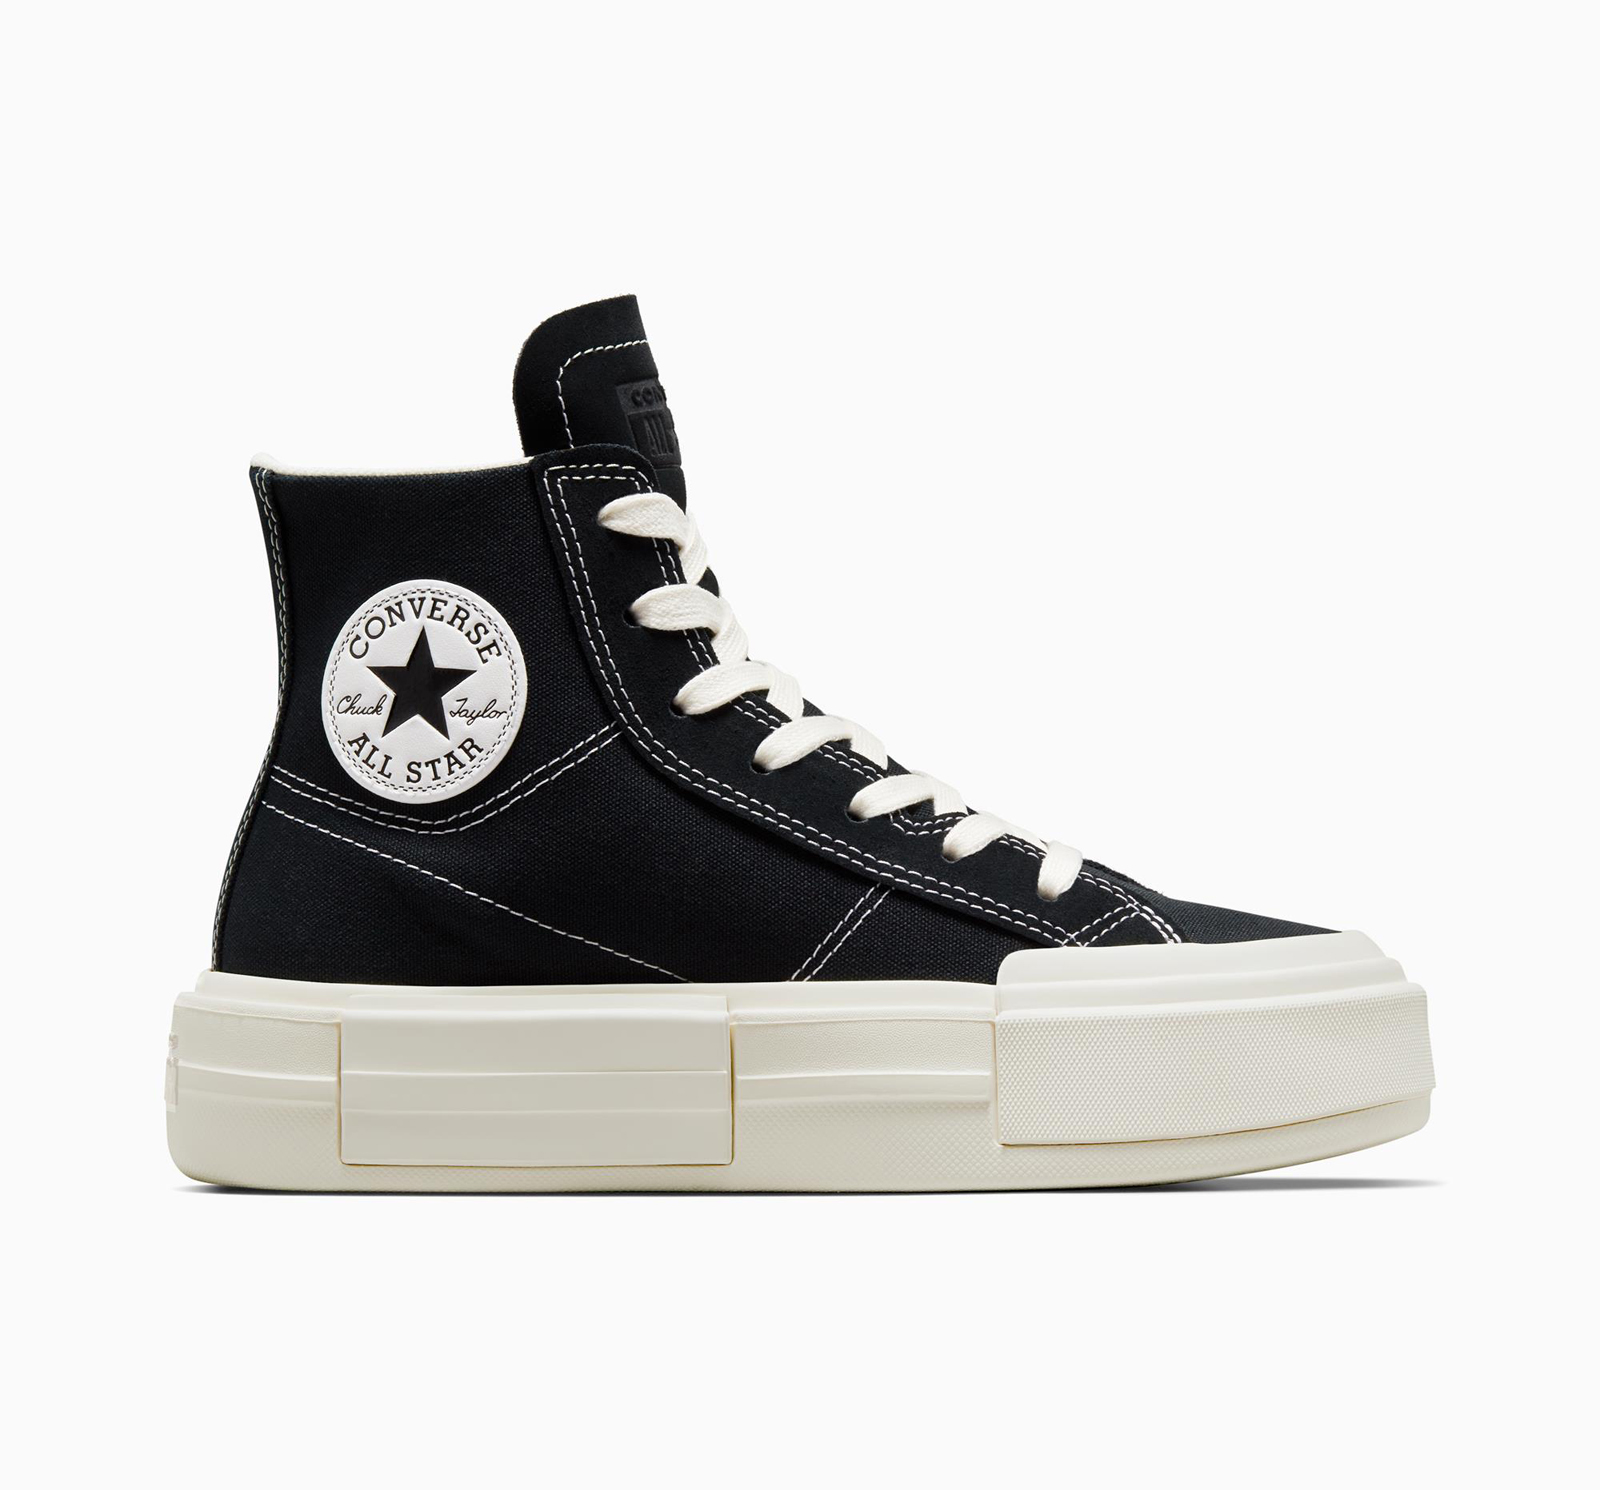 Ανδρικά > Παπούτσια > Sneaker > Παπούτσι Mid Cut Converse - CHUCK TAYLOR ALL STAR CRUISE - 001-BLACK/EGRET/BLACK